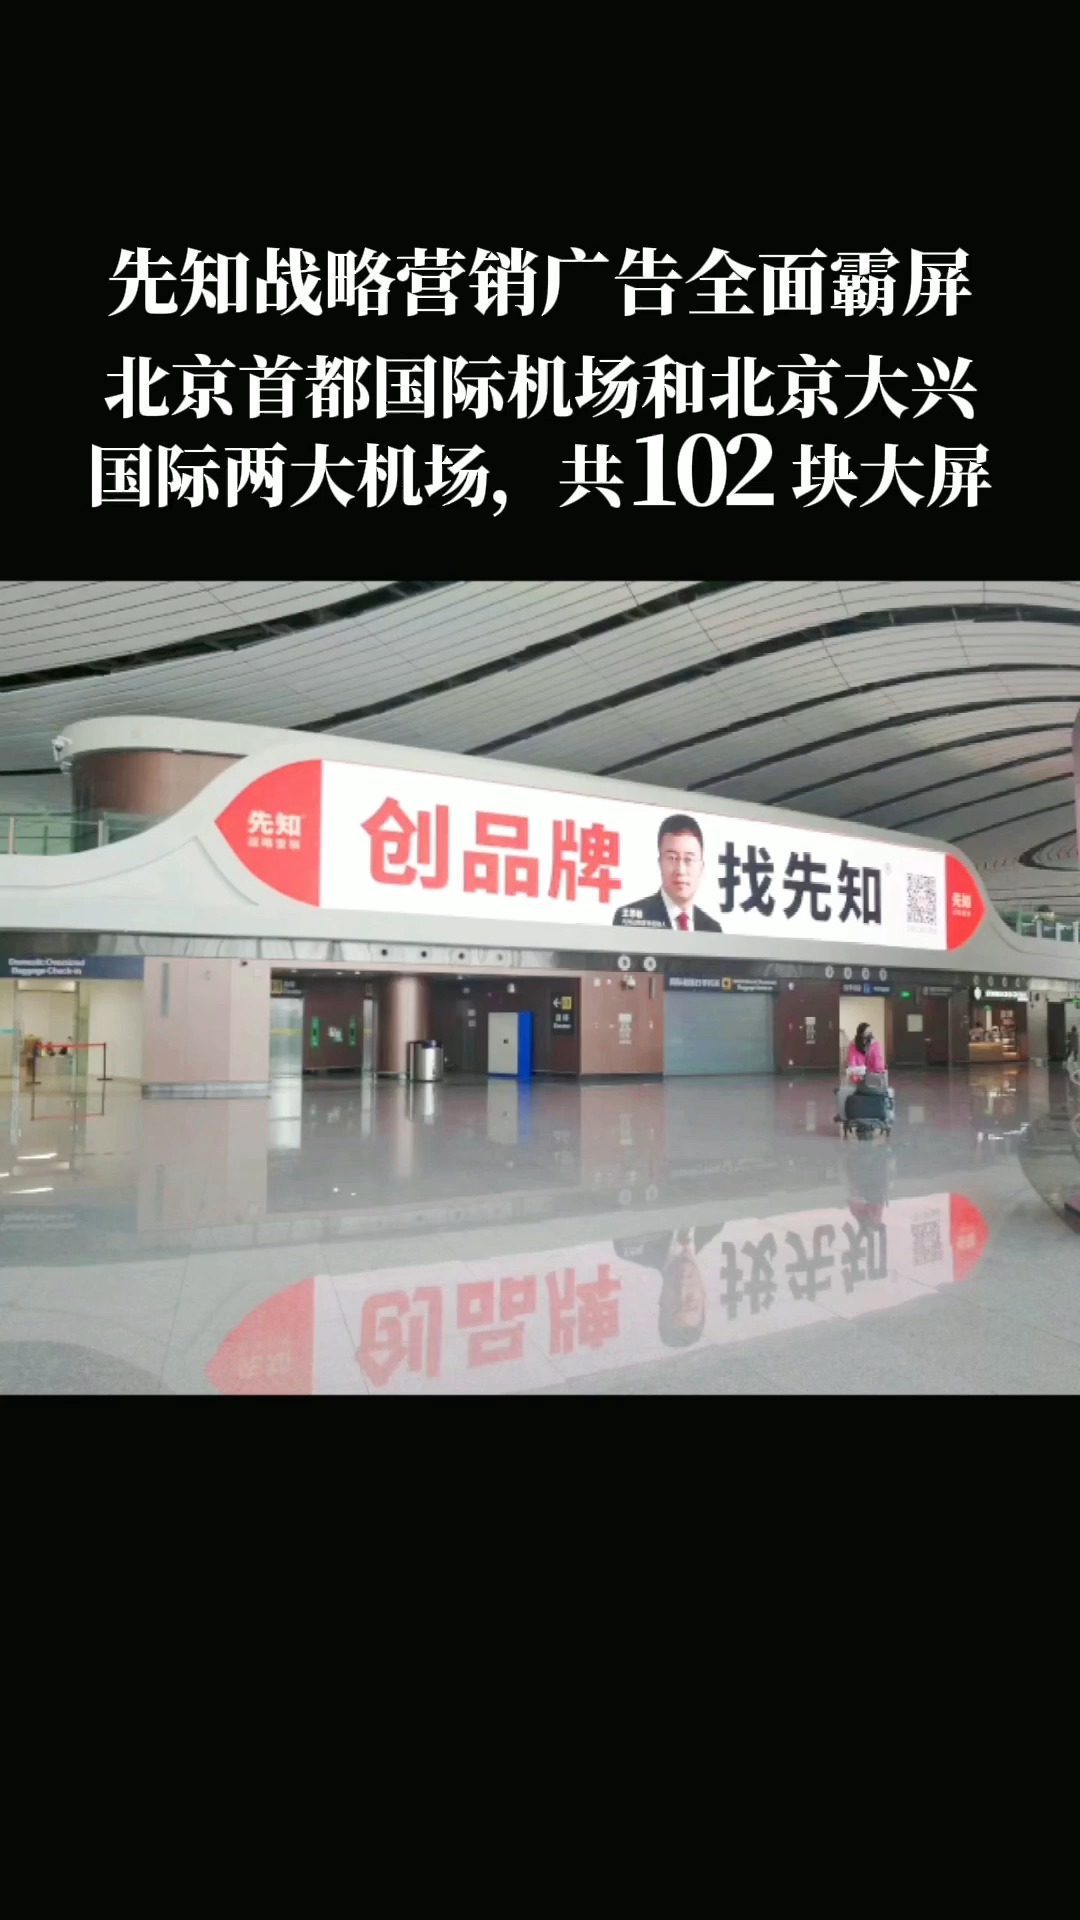 先知战略营销全面霸屏北京首都国际机场和北京大兴国际机场，共102块大屏，媒介高大上，更能增强品牌能量 #创品牌找先知